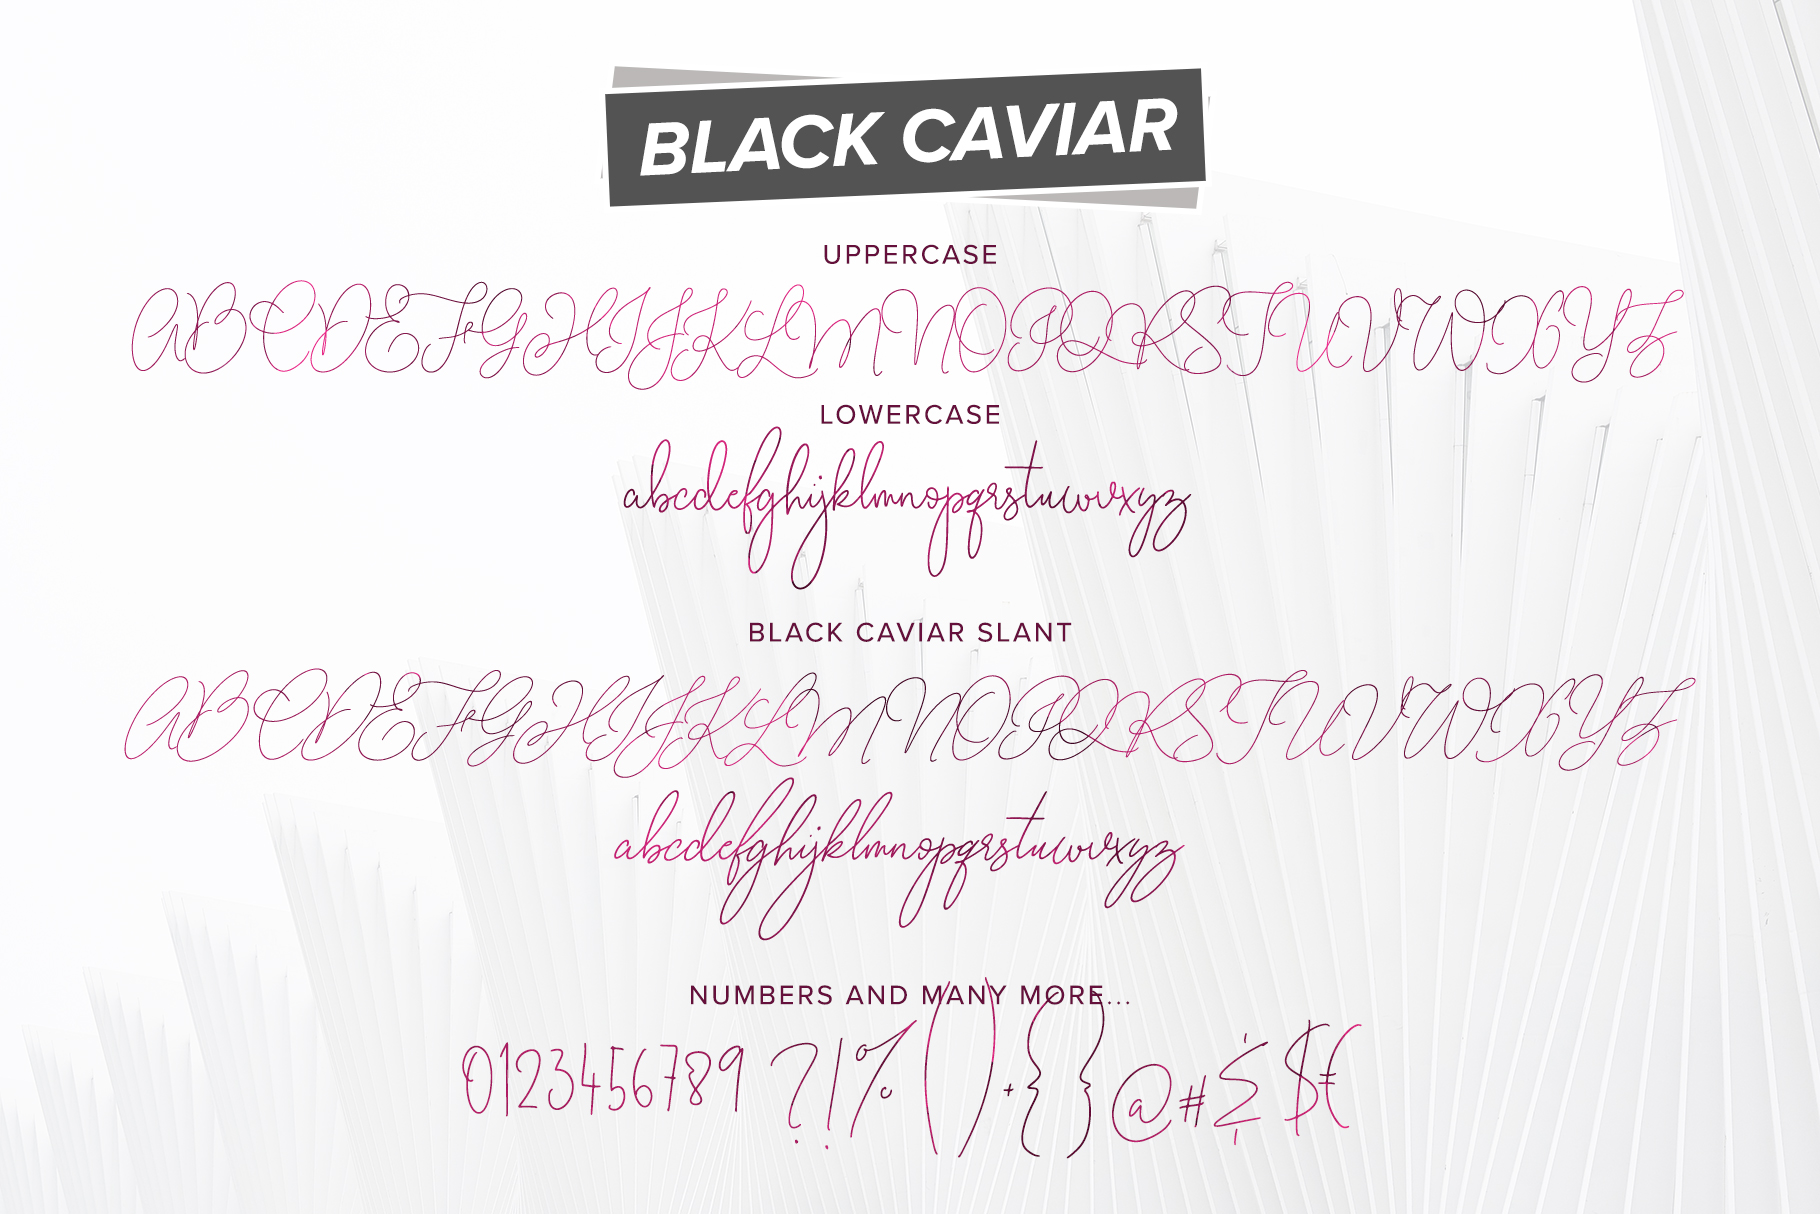 Шрифт caviar dreams